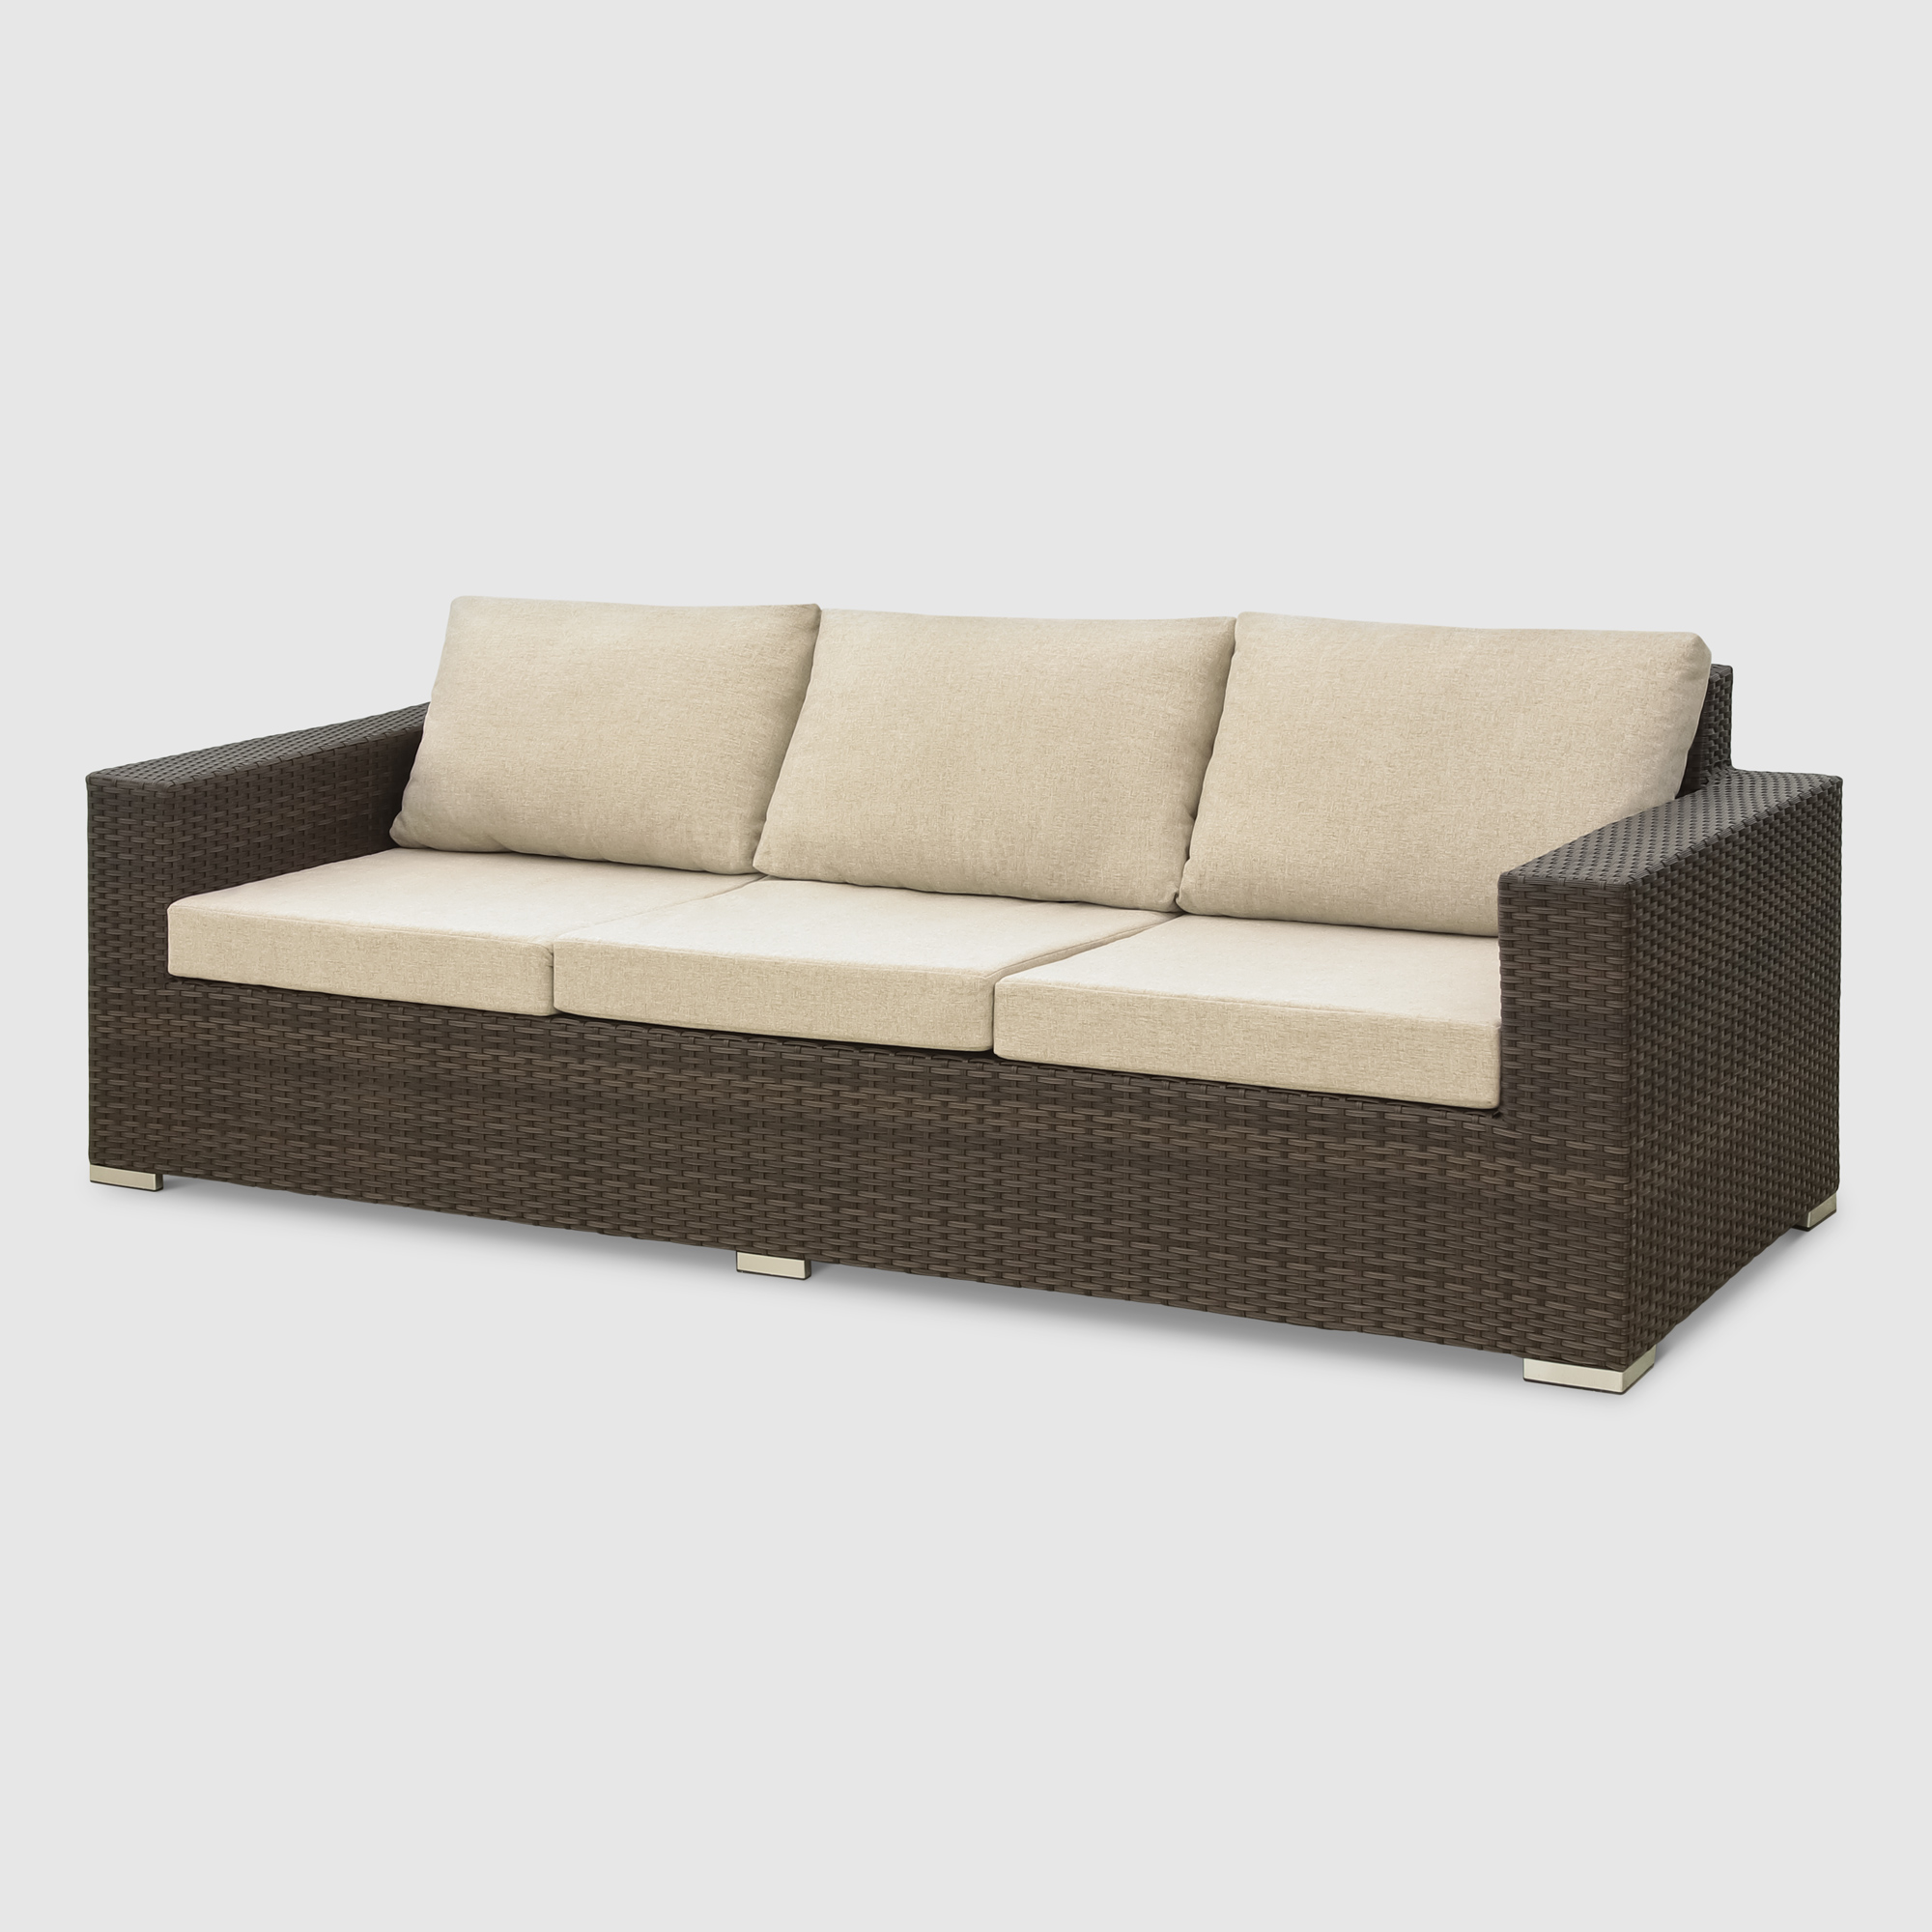 Комплект мебели Mavi rattan 4 предмета (041-036dky), цвет коричневый - фото 4